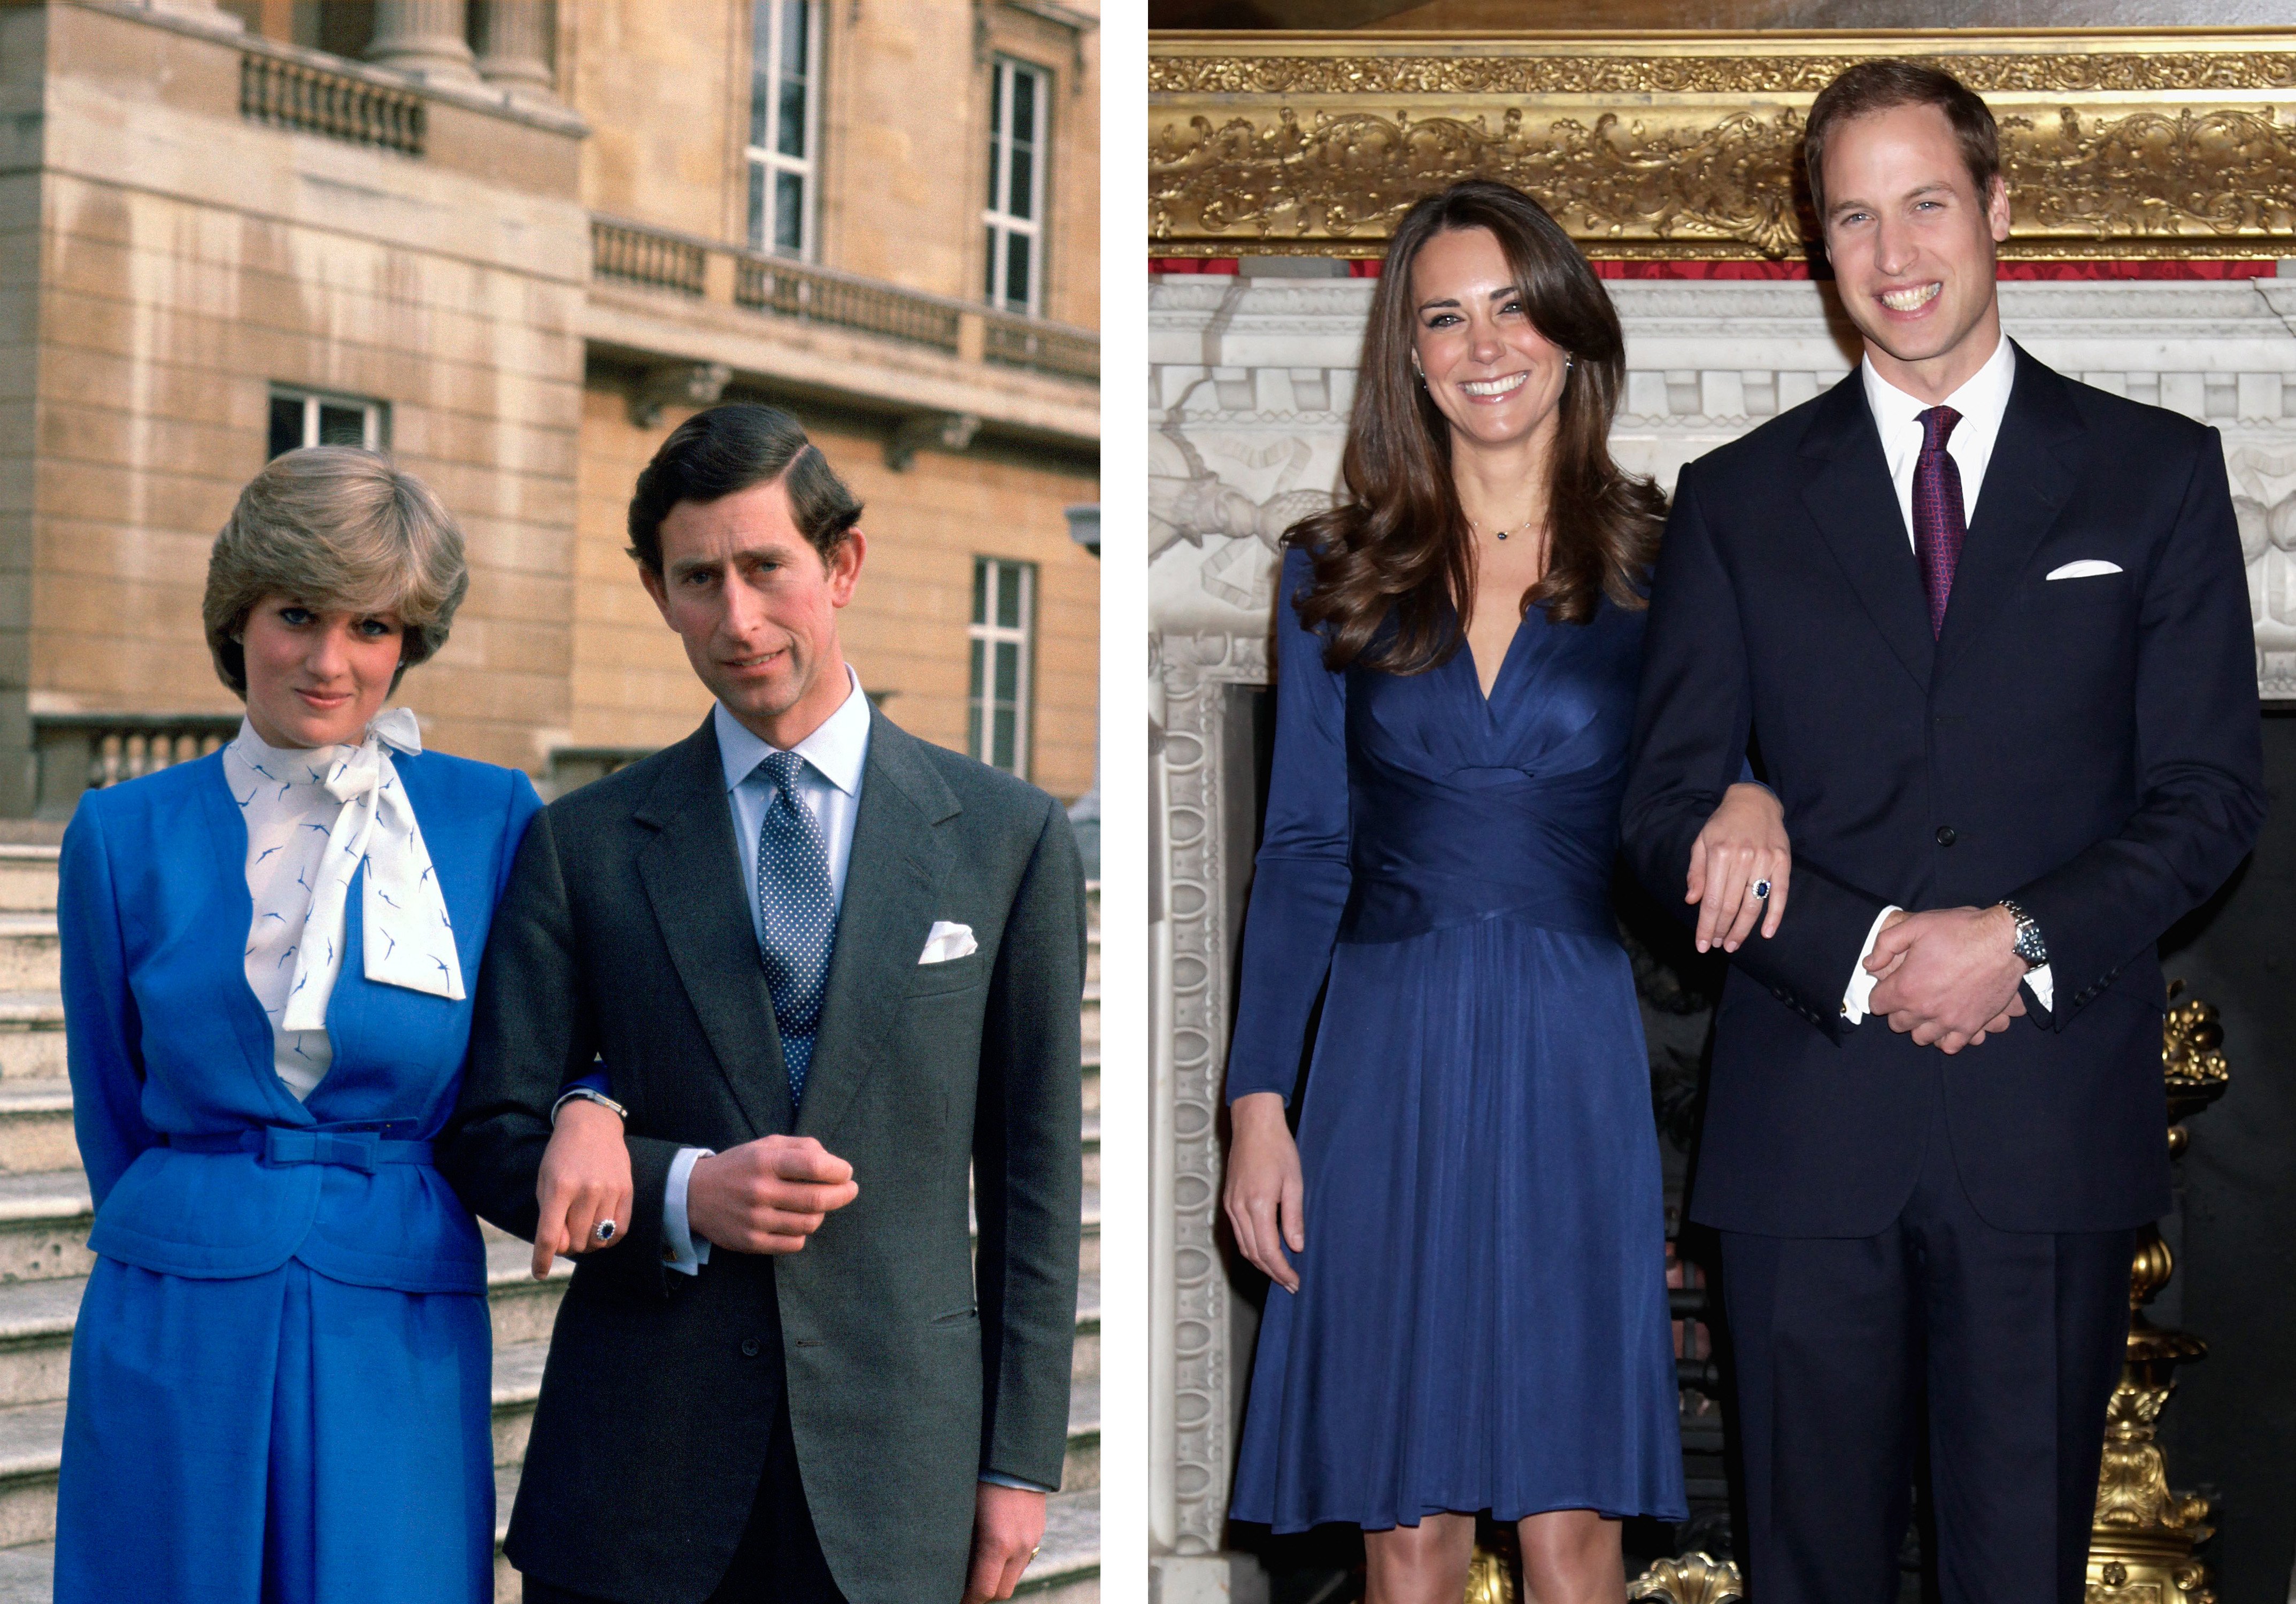 Foto zum Vergleich der Verlobungsanzeigen von Prinz Charles mit Prinzessin Diana und Prinz William mit Kate Middleton | Quelle: Getty Images